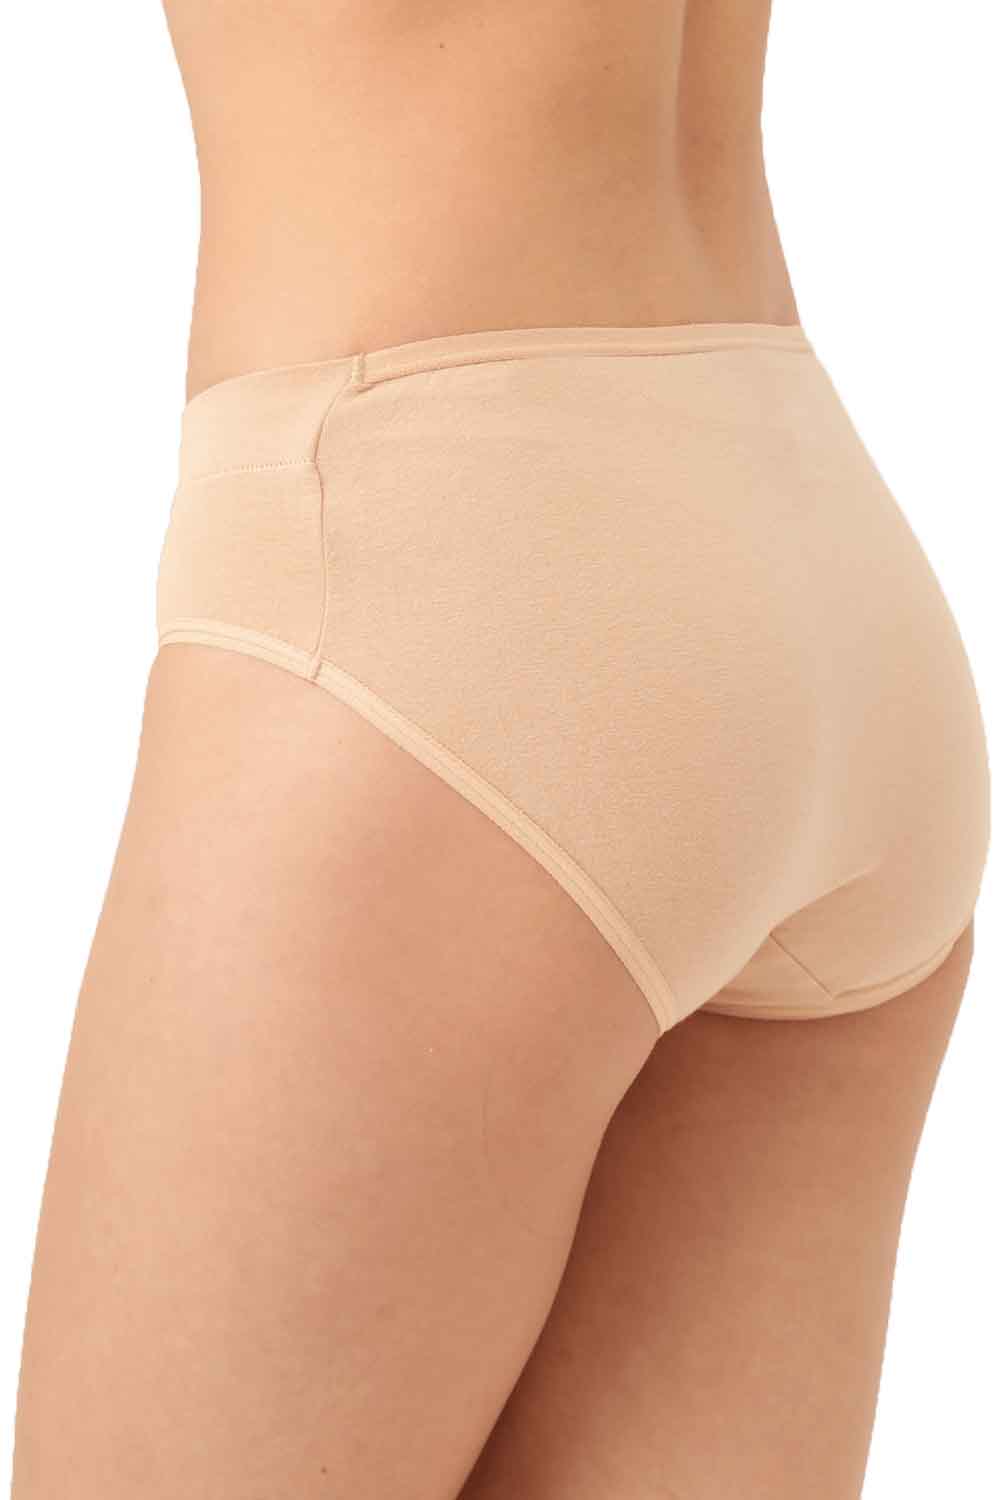 Peau Ethique Eva Organic Cotton Panties Underwear